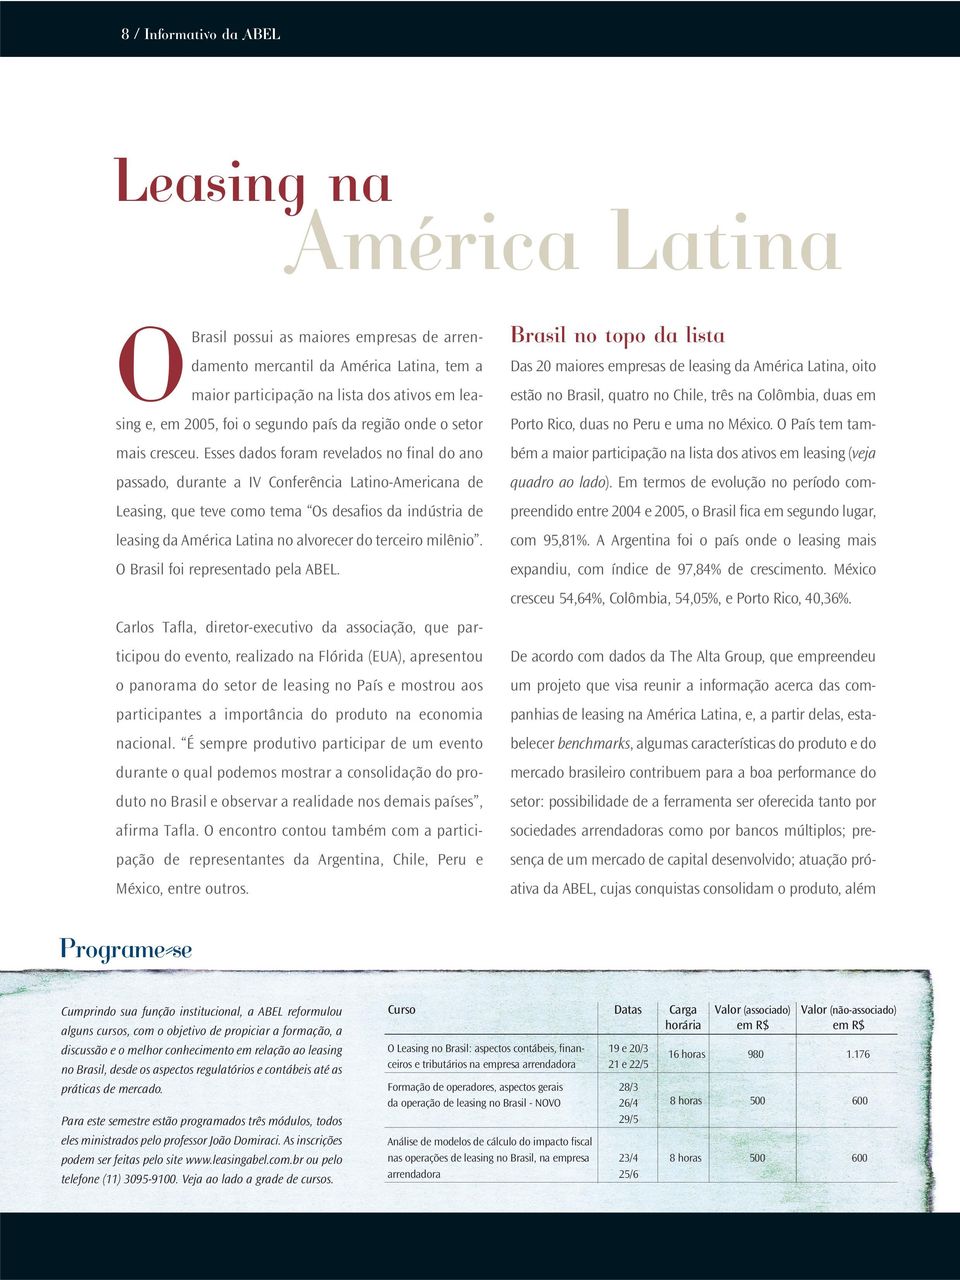 Esses dados foram revelados no final do ano passado, durante a IV Conferência Latino-Americana de Leasing, que teve como tema Os desafios da indústria de leasing da América Latina no alvorecer do